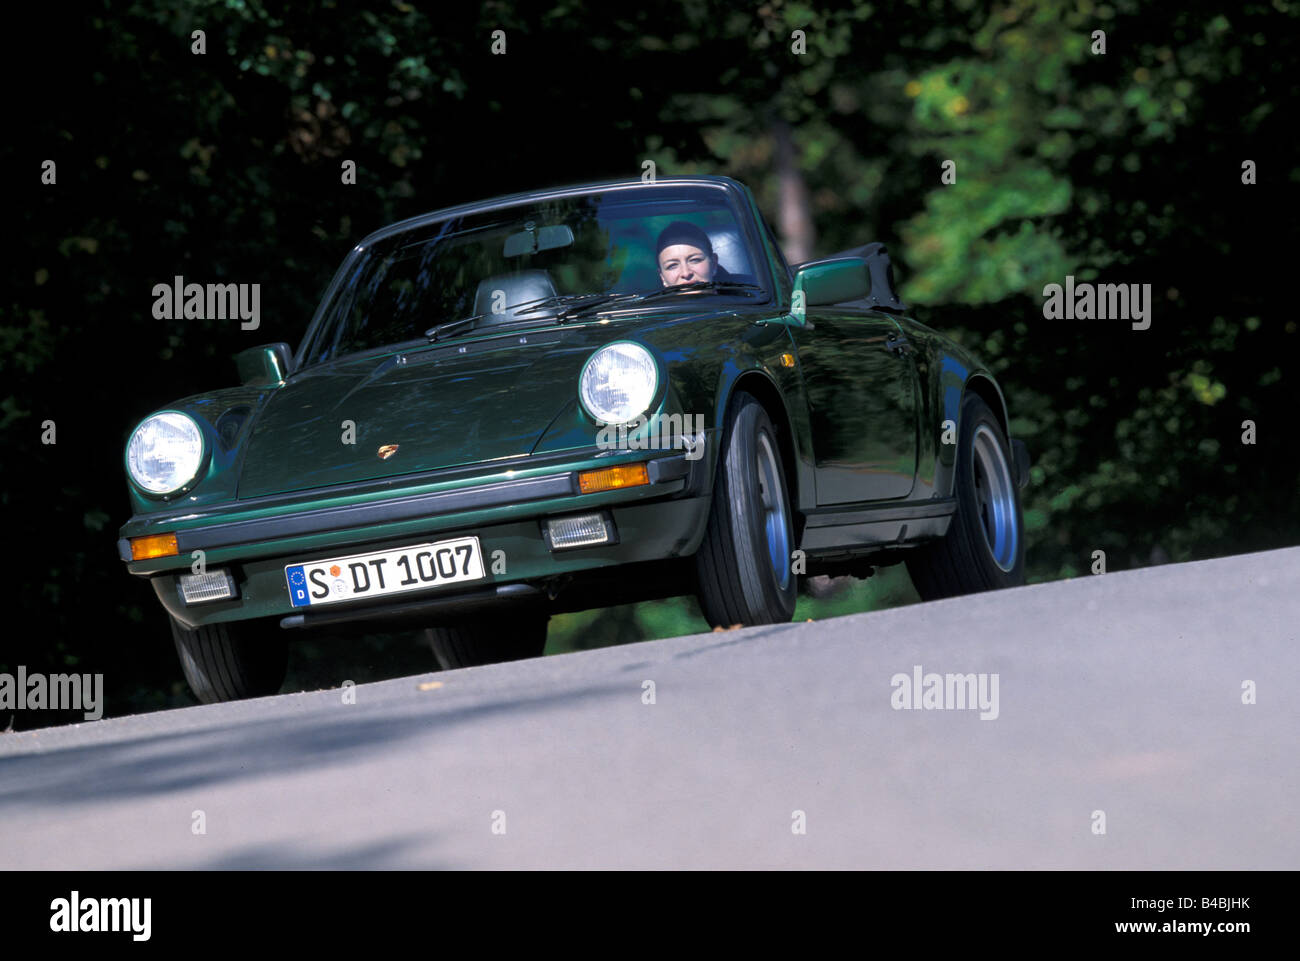 Voiture, Porsche 911 SC cabriolet, année modèle 1983-1989, ce véhicule : modèle de l'année 1985, open top, vert foncé, FGUJ, conduite, diago Banque D'Images